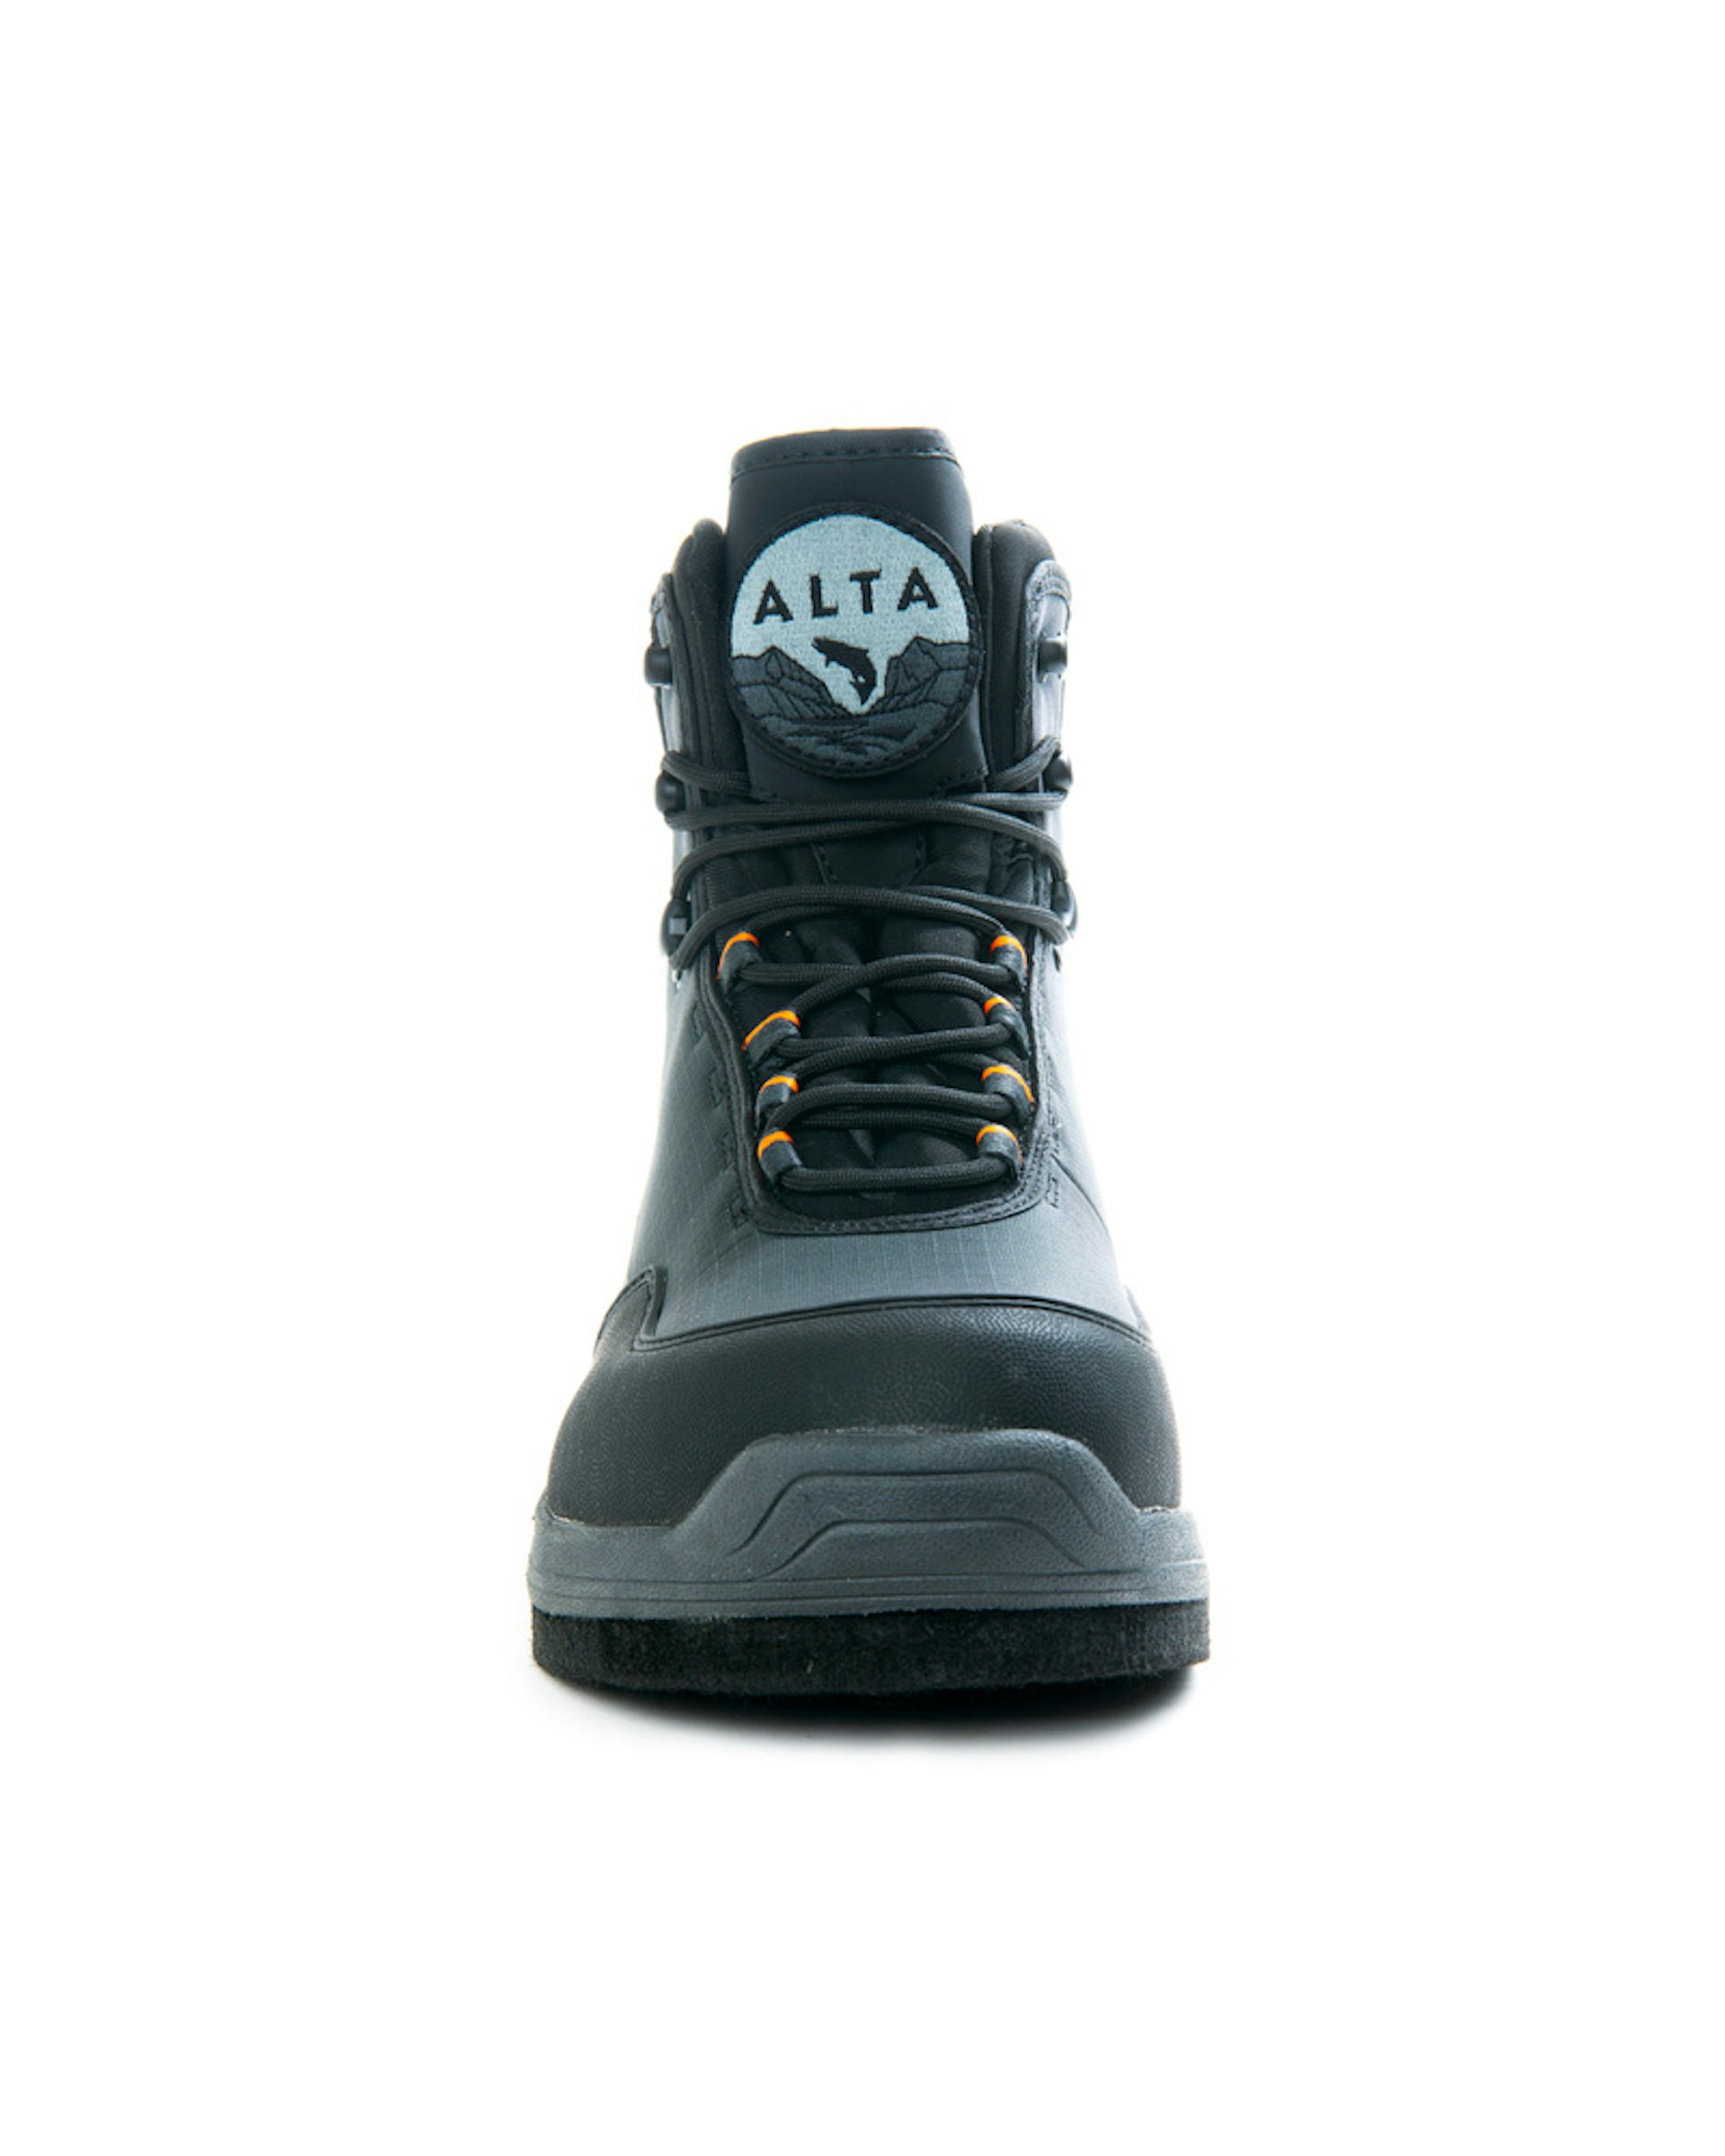 Alta NGx Boot Felt US9/EUR42/UK8 (bild 4 av 6)